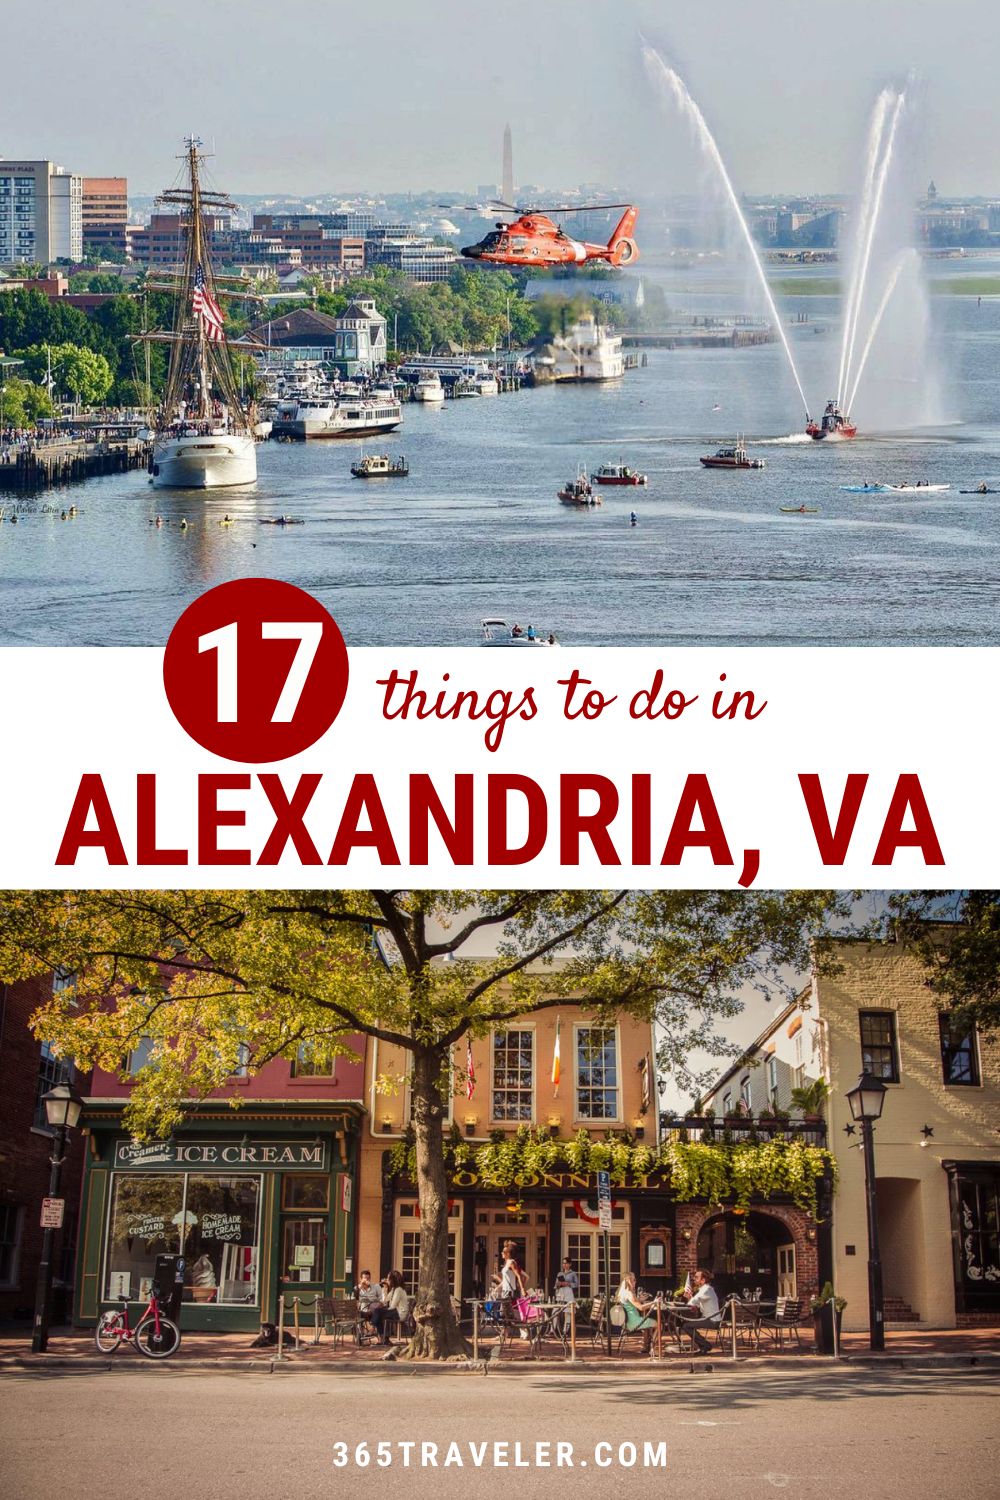 17 FUN & MEMORABLE THINGS TO DO IN ALEXANDRIA VA